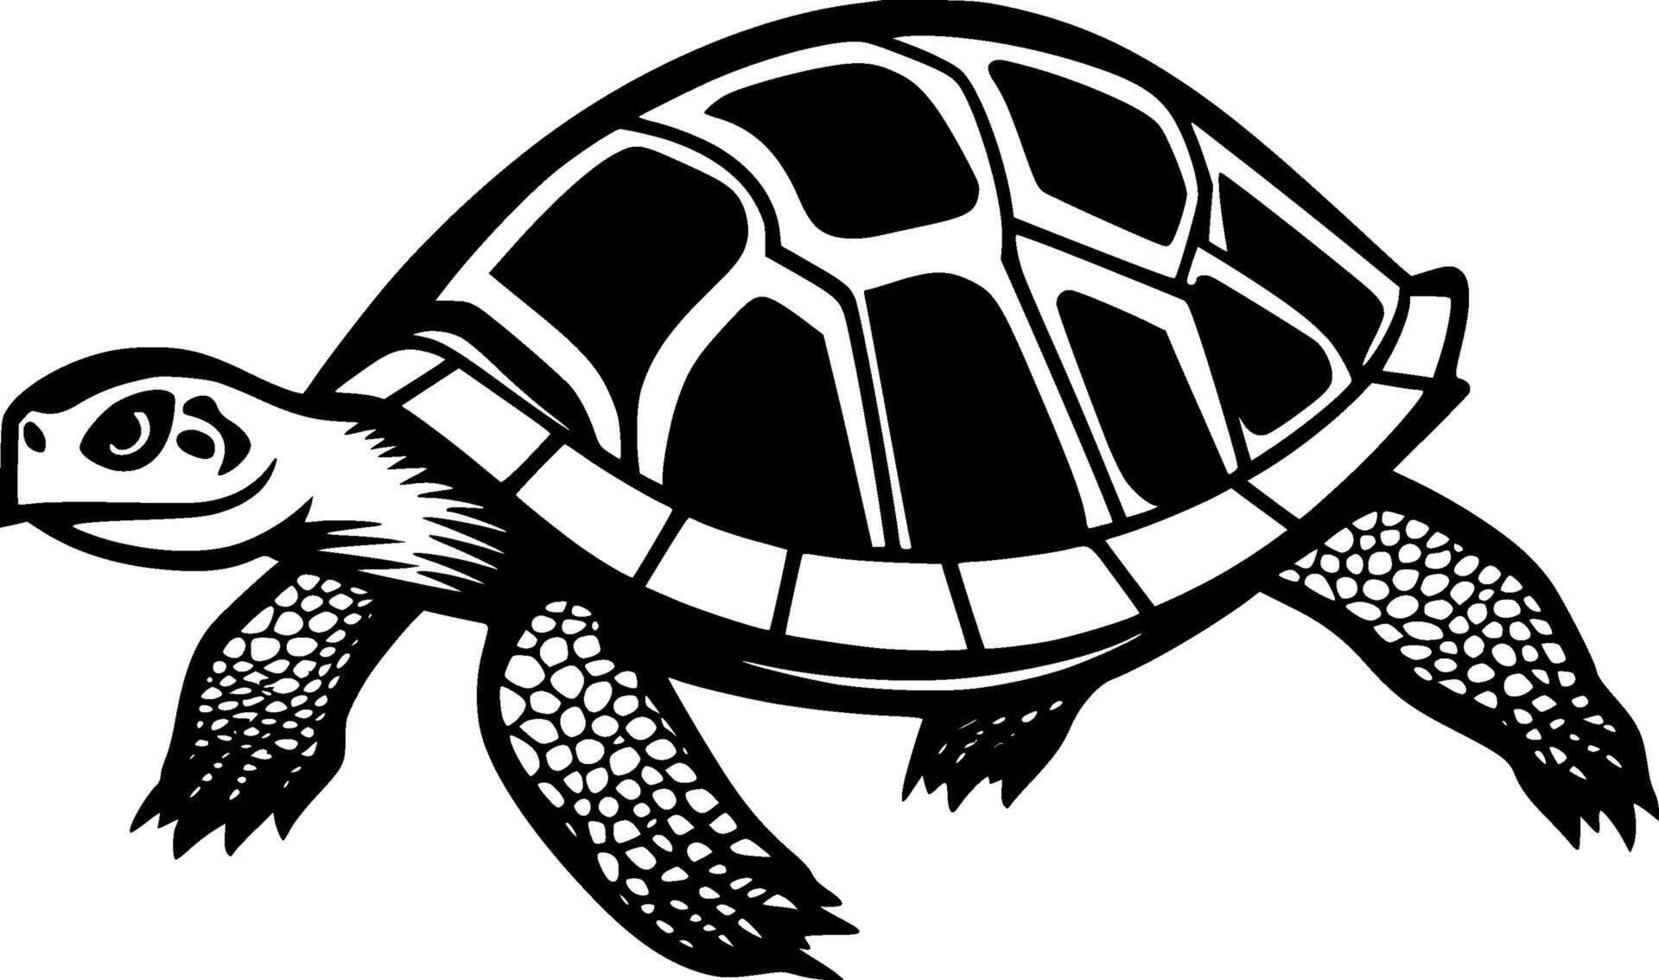 Schildkröte - - minimalistisch und eben Logo - - Vektor Illustration